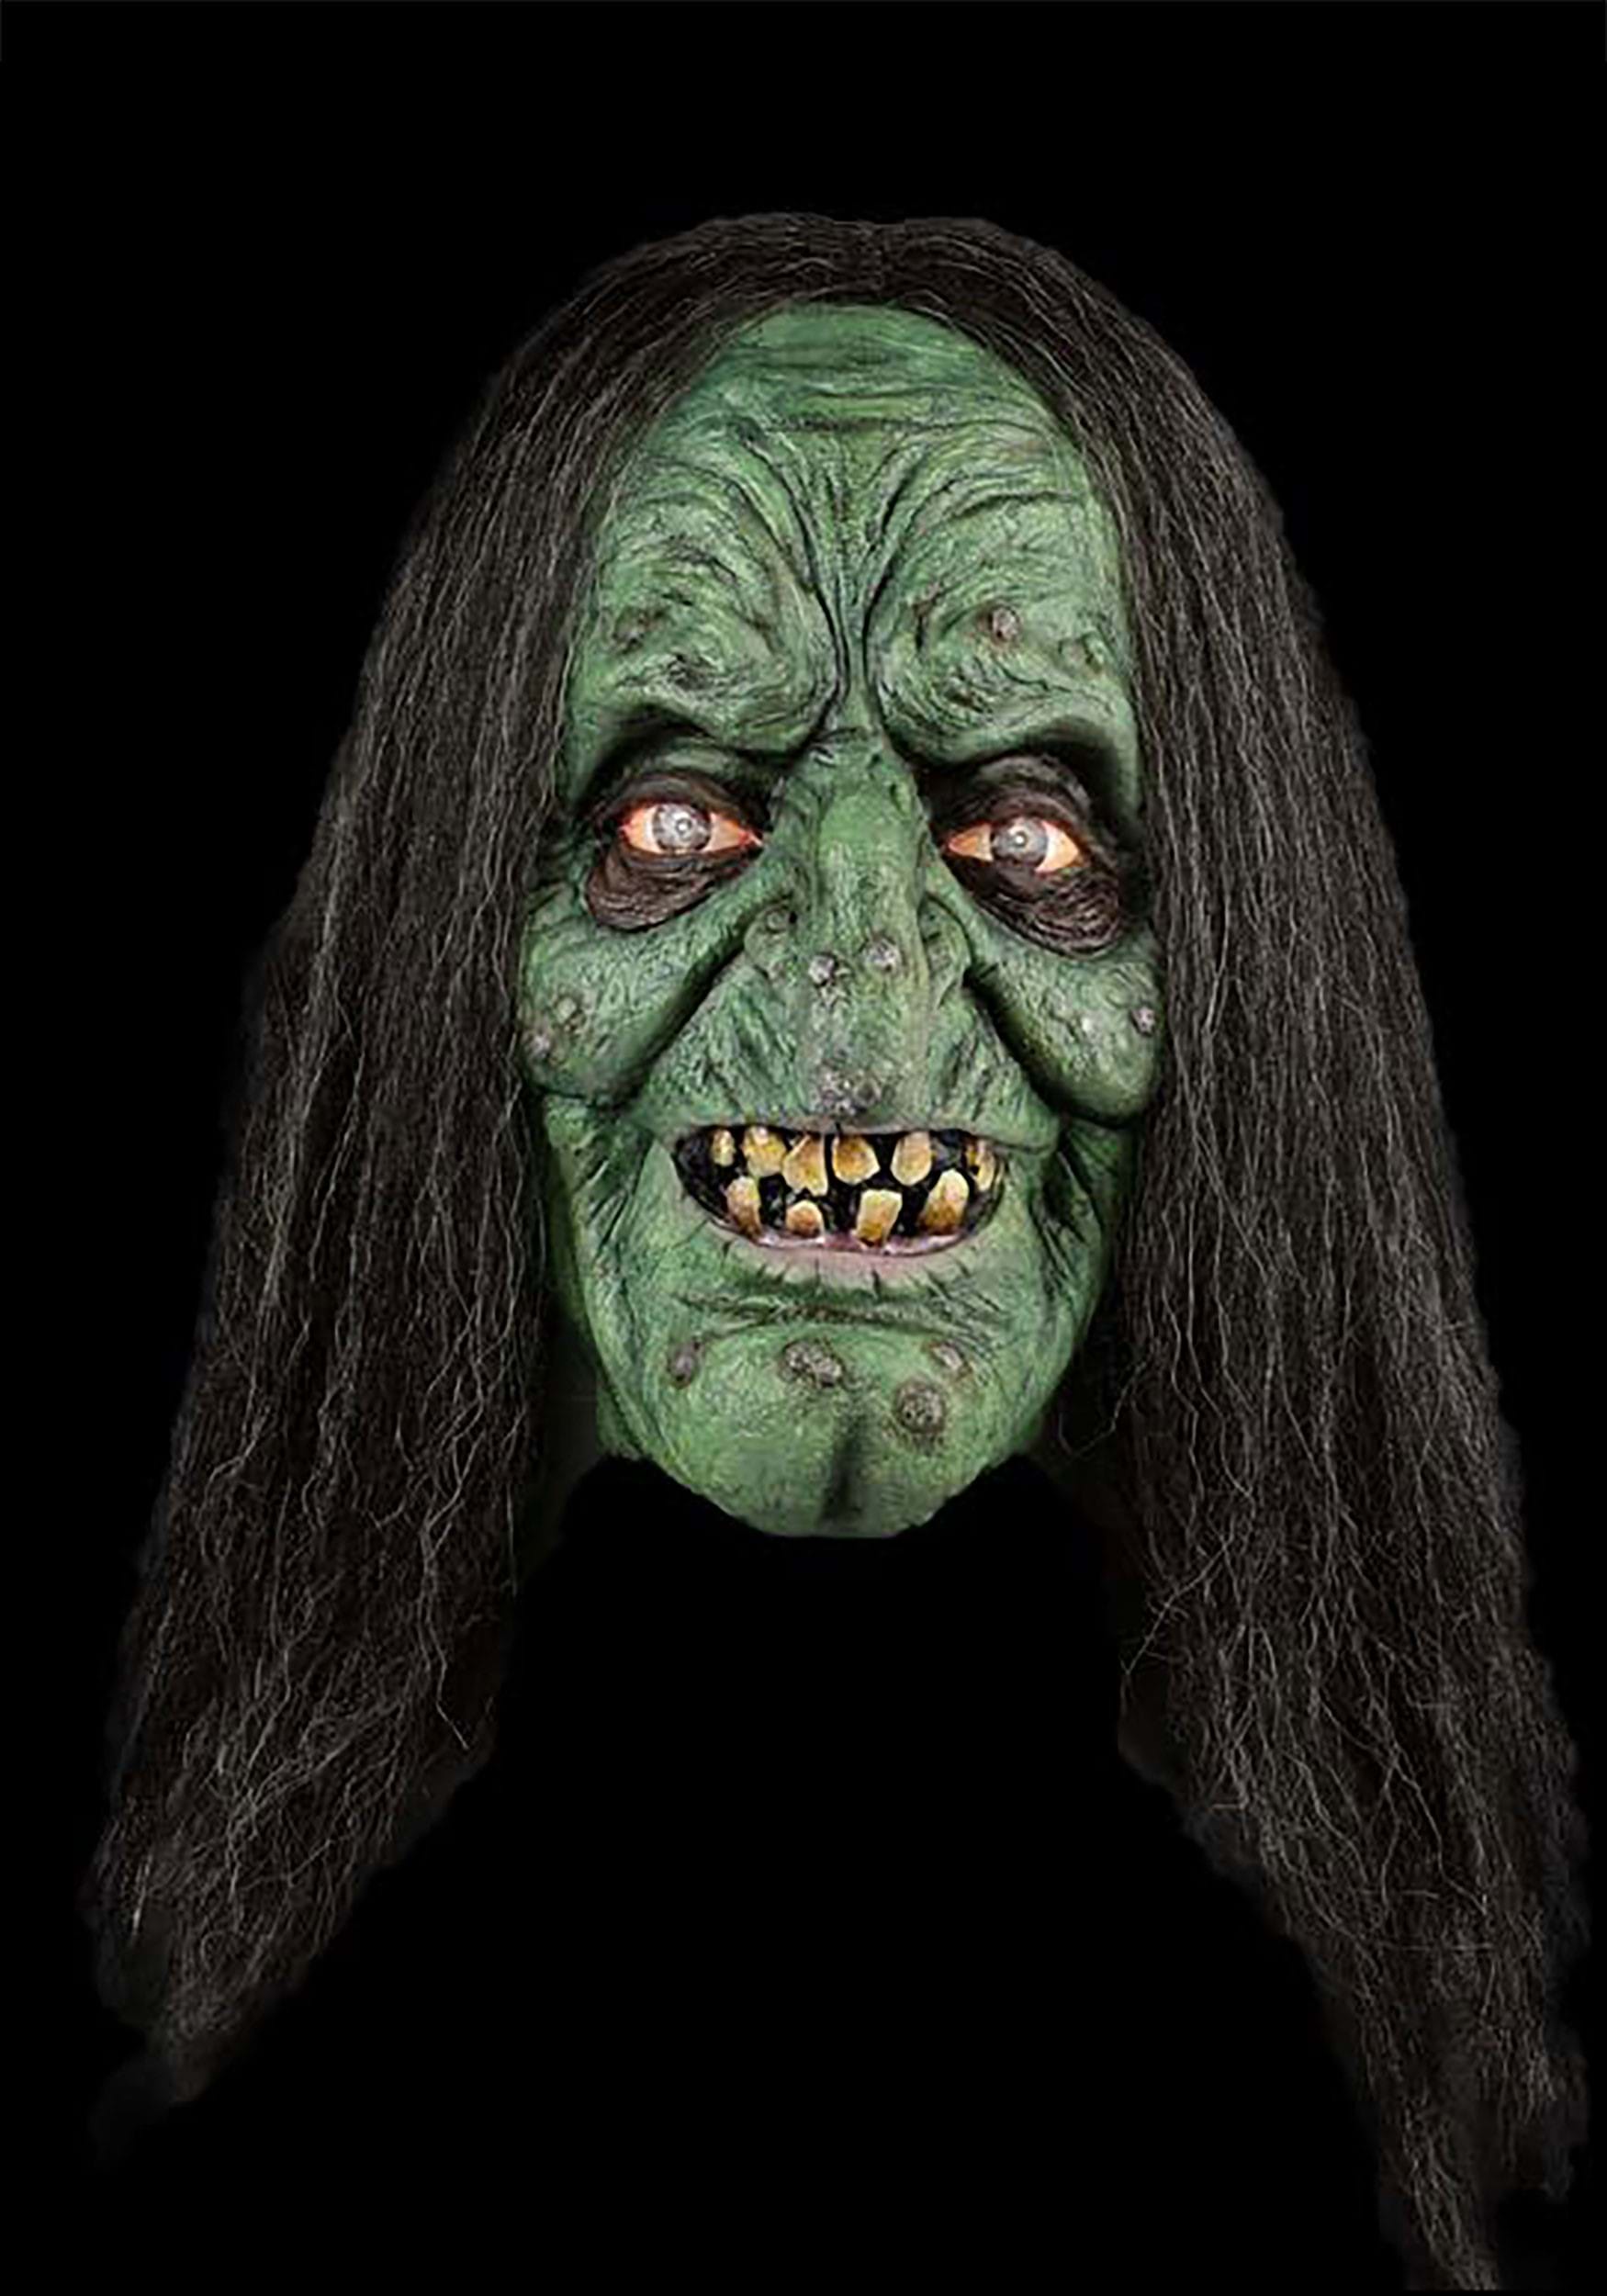 Green Witch Makeup Tutorial - Mehron, Inc.